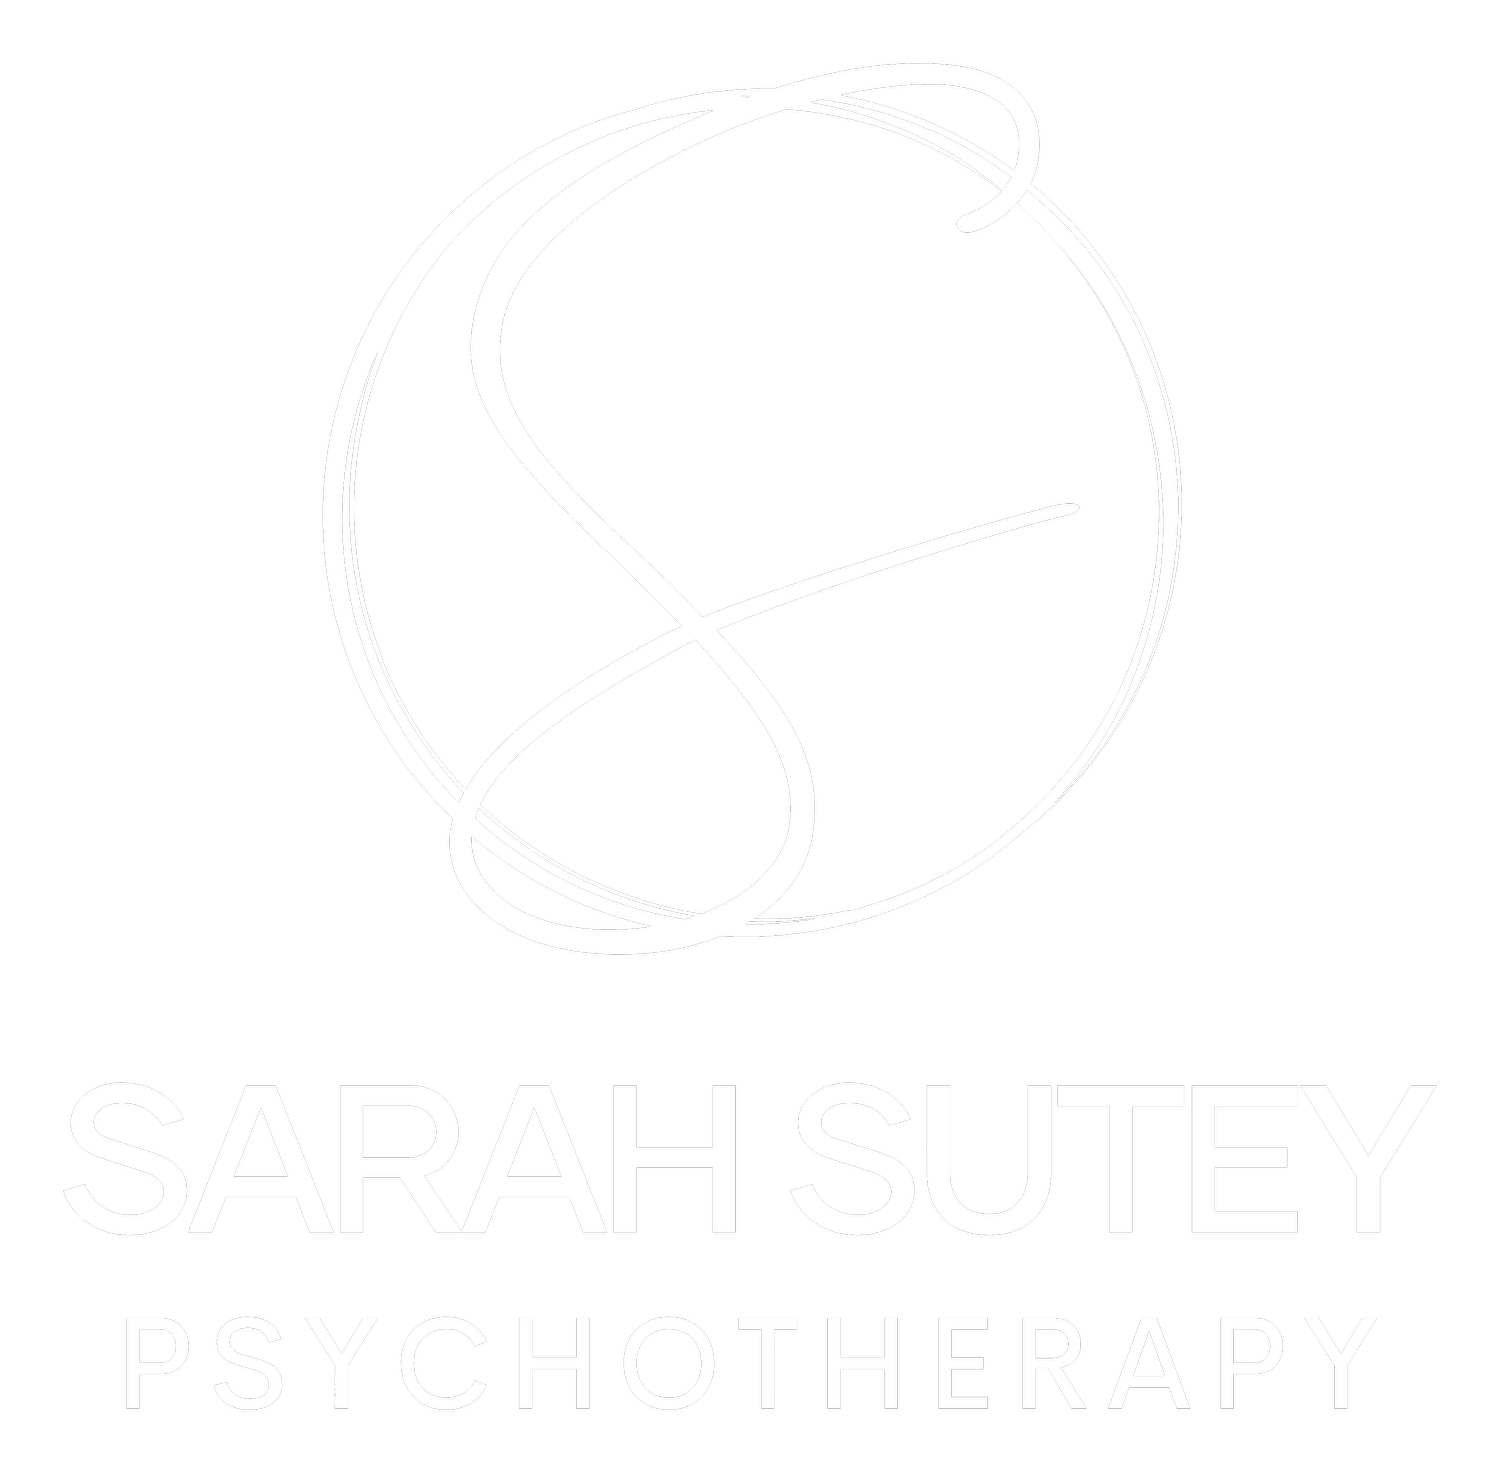 Sarah Sutey Psychotherapy